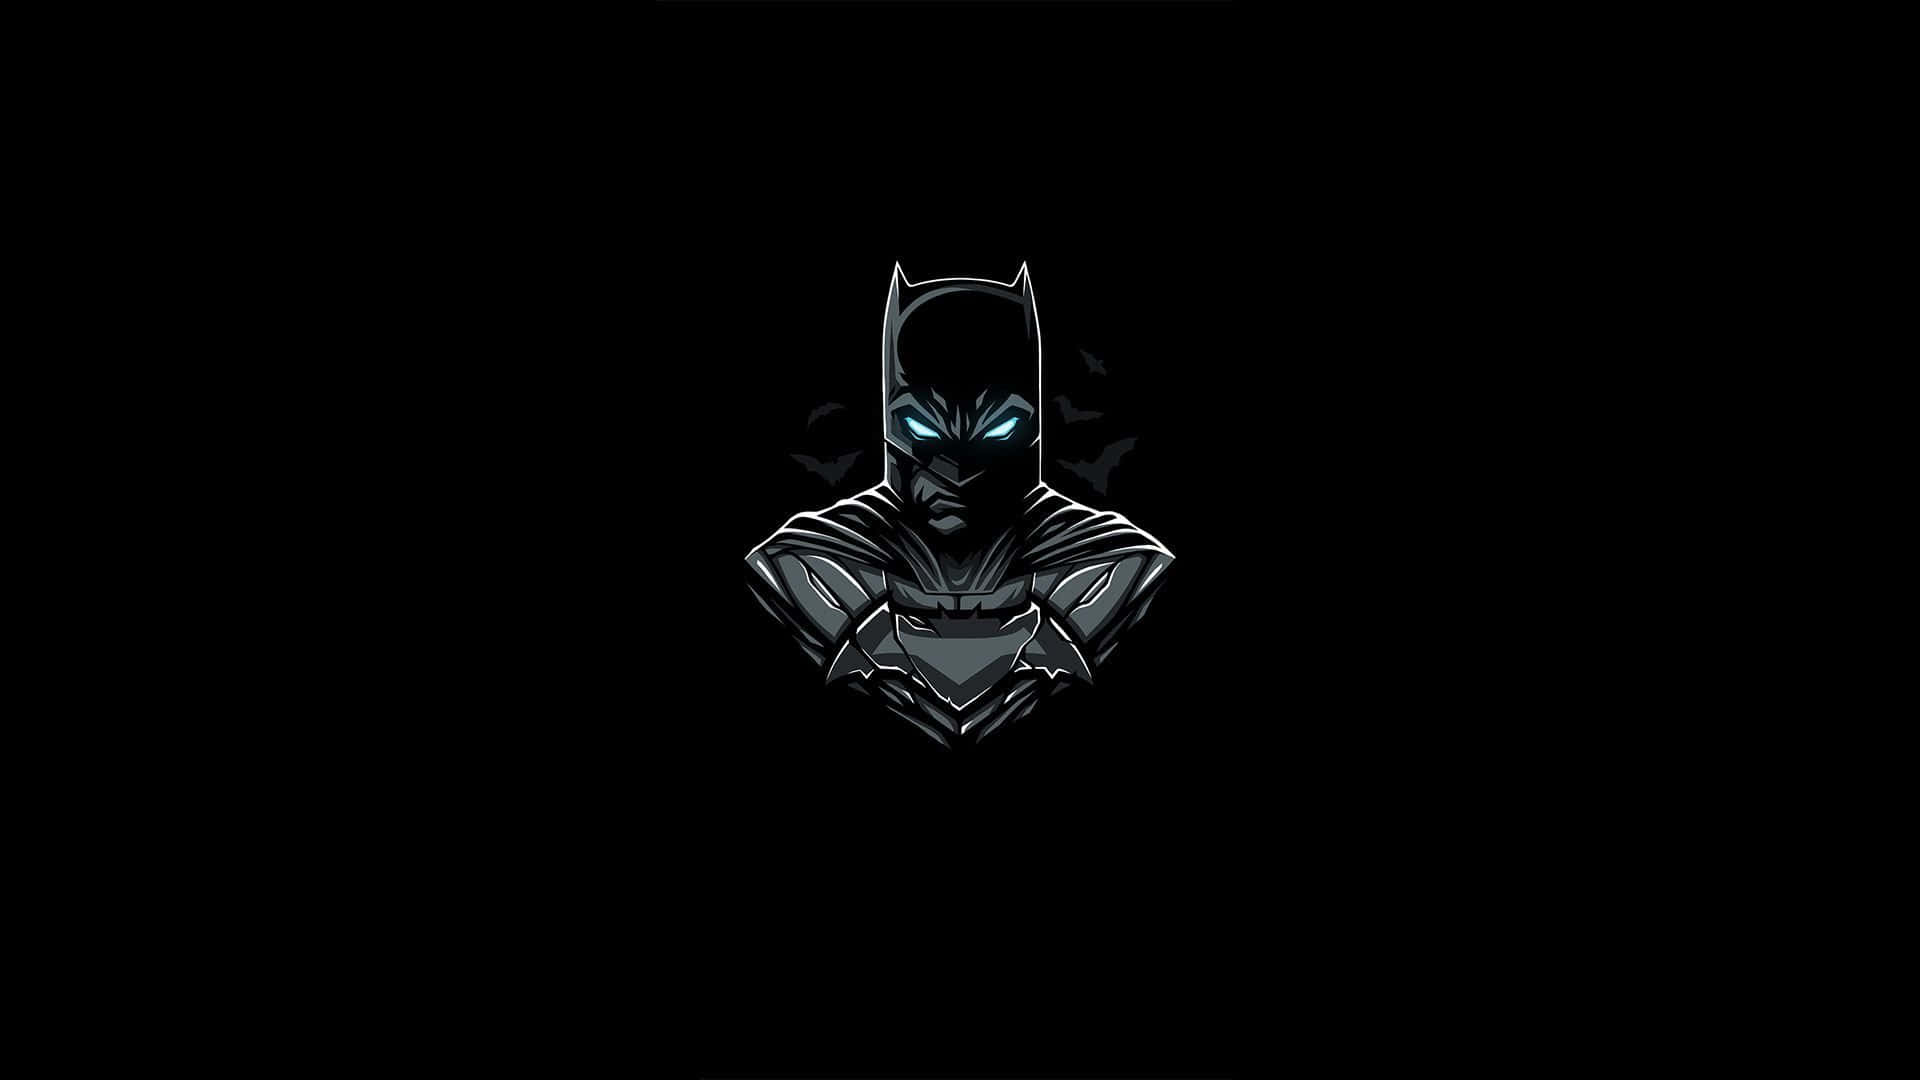 1920x1080 Amoled Batman Background